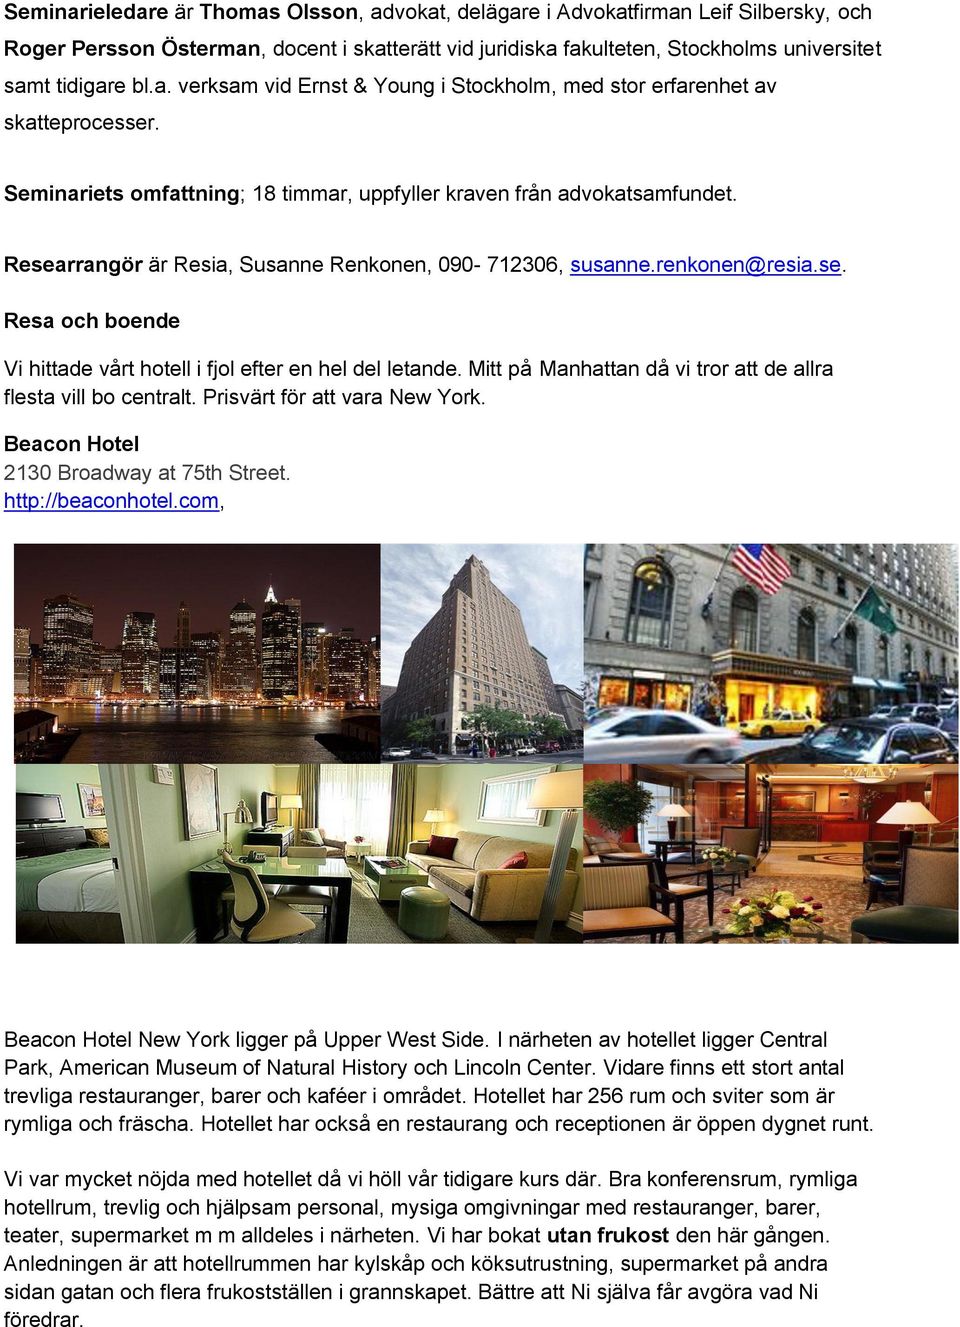 Mitt på Manhattan då vi tror att de allra flesta vill bo centralt. Prisvärt för att vara New York. Beacon Hotel 2130 Broadway at 75th Street. http://beaconhotel.